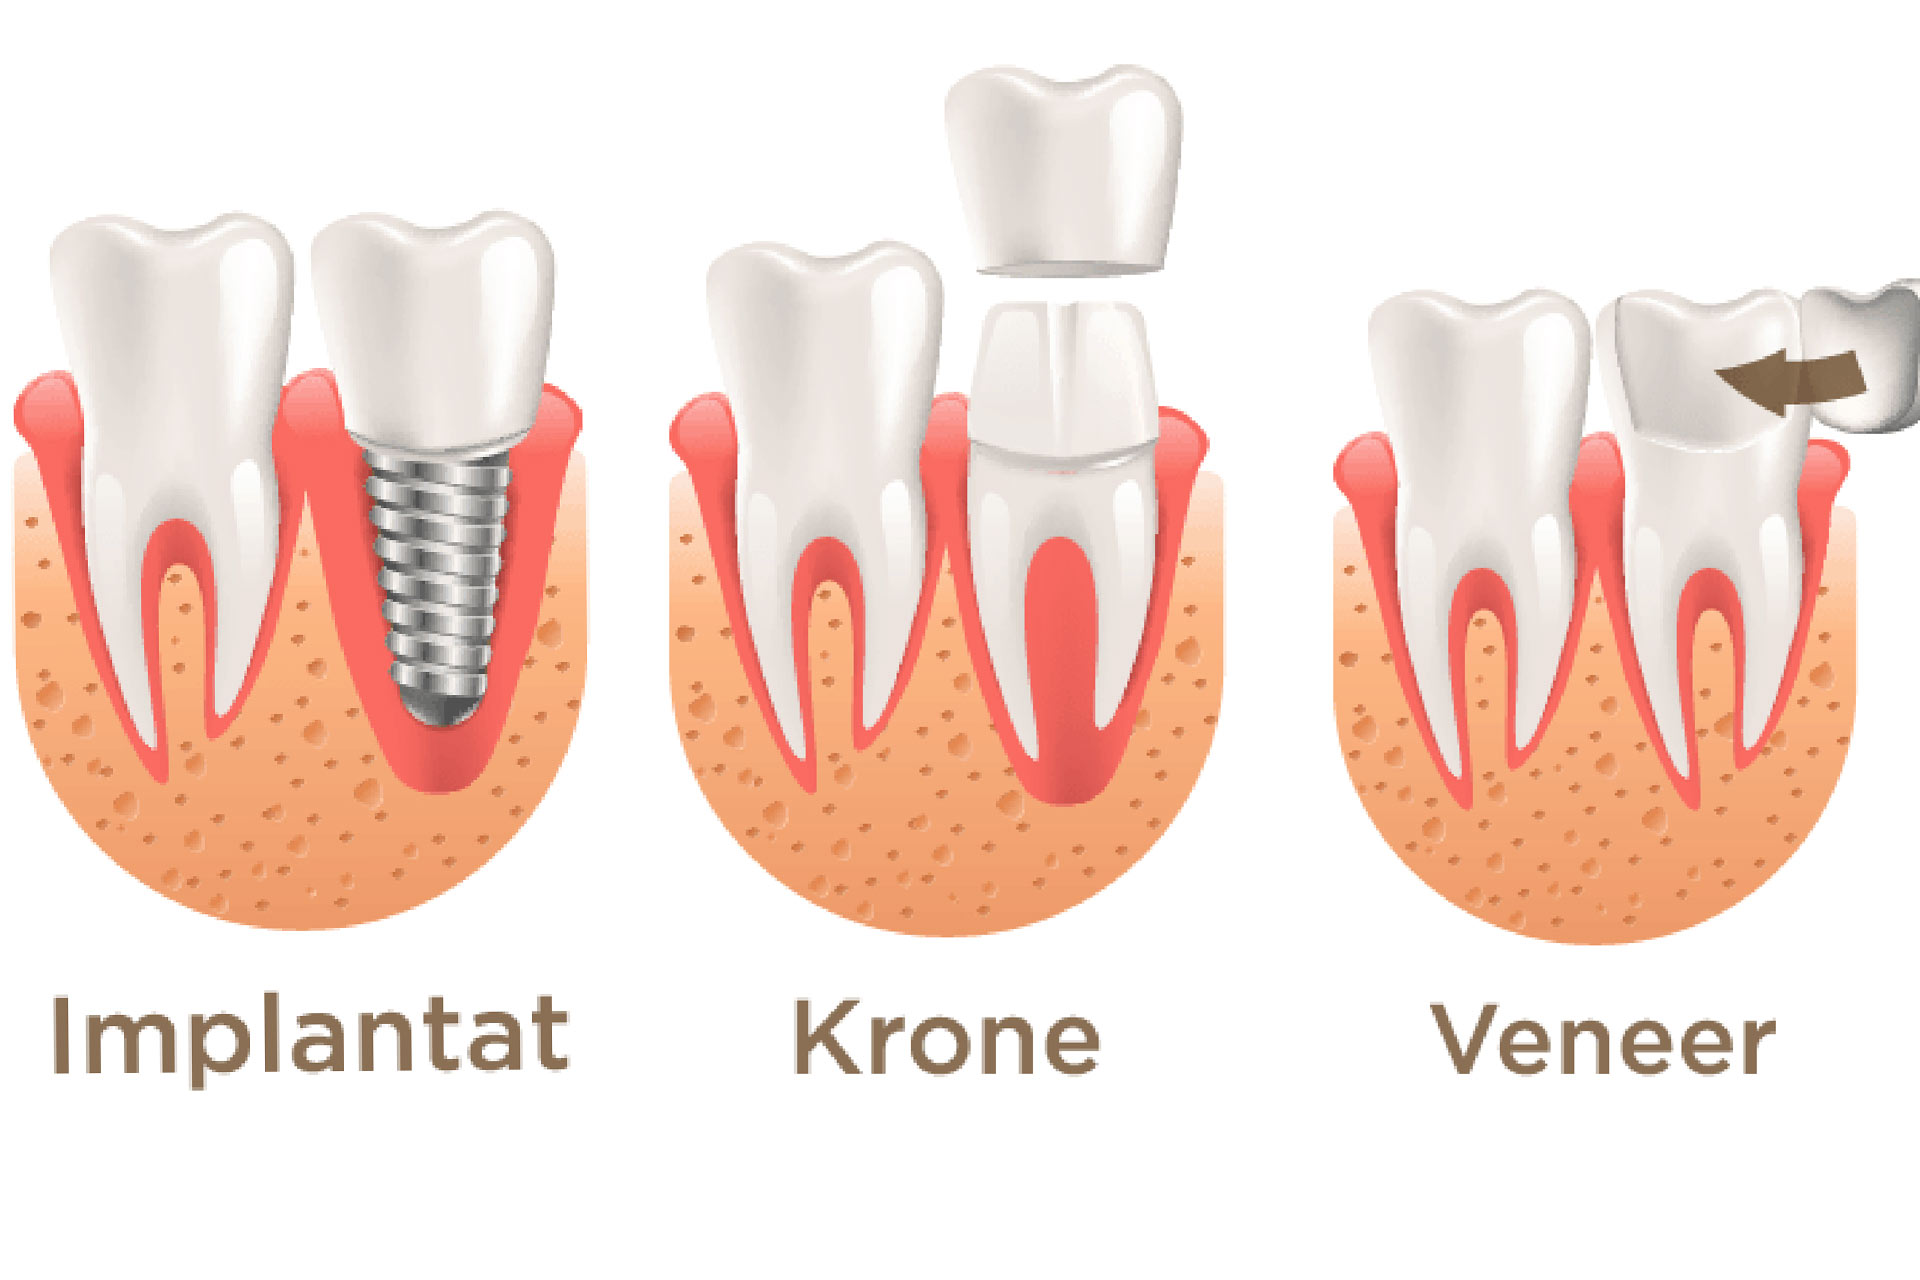 Grafik für Veneers, Kronen und Zahnimplantate